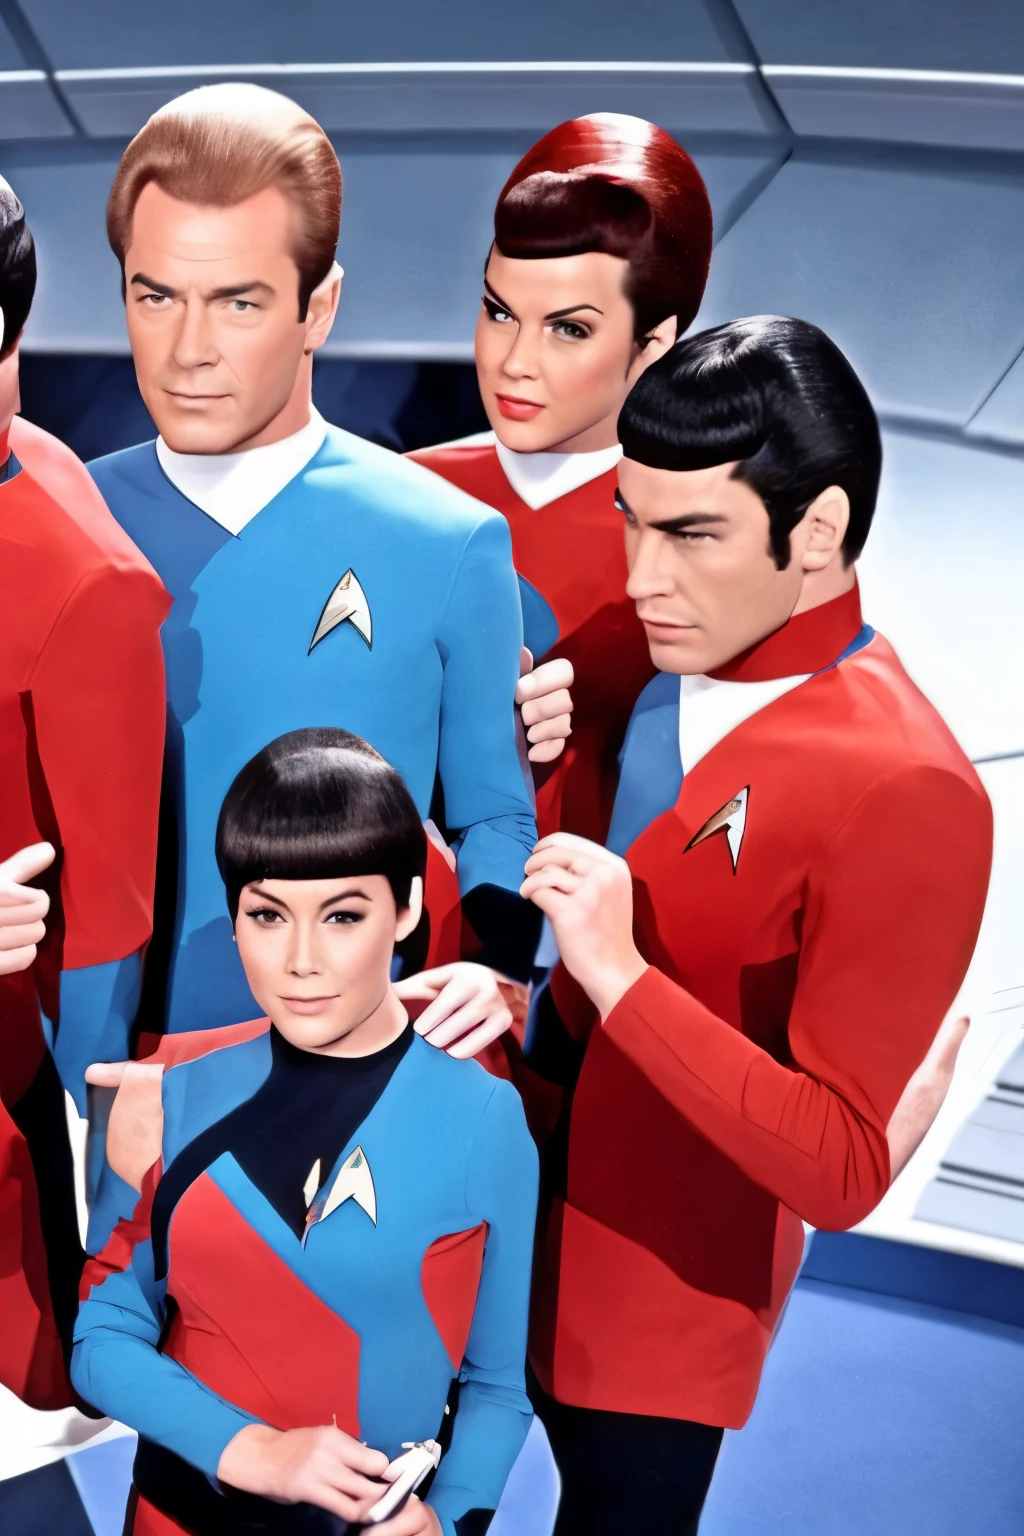 60s Star Trek Porn - Arafed image of a group of people dressed in star trek uniforms - SeaArt AI